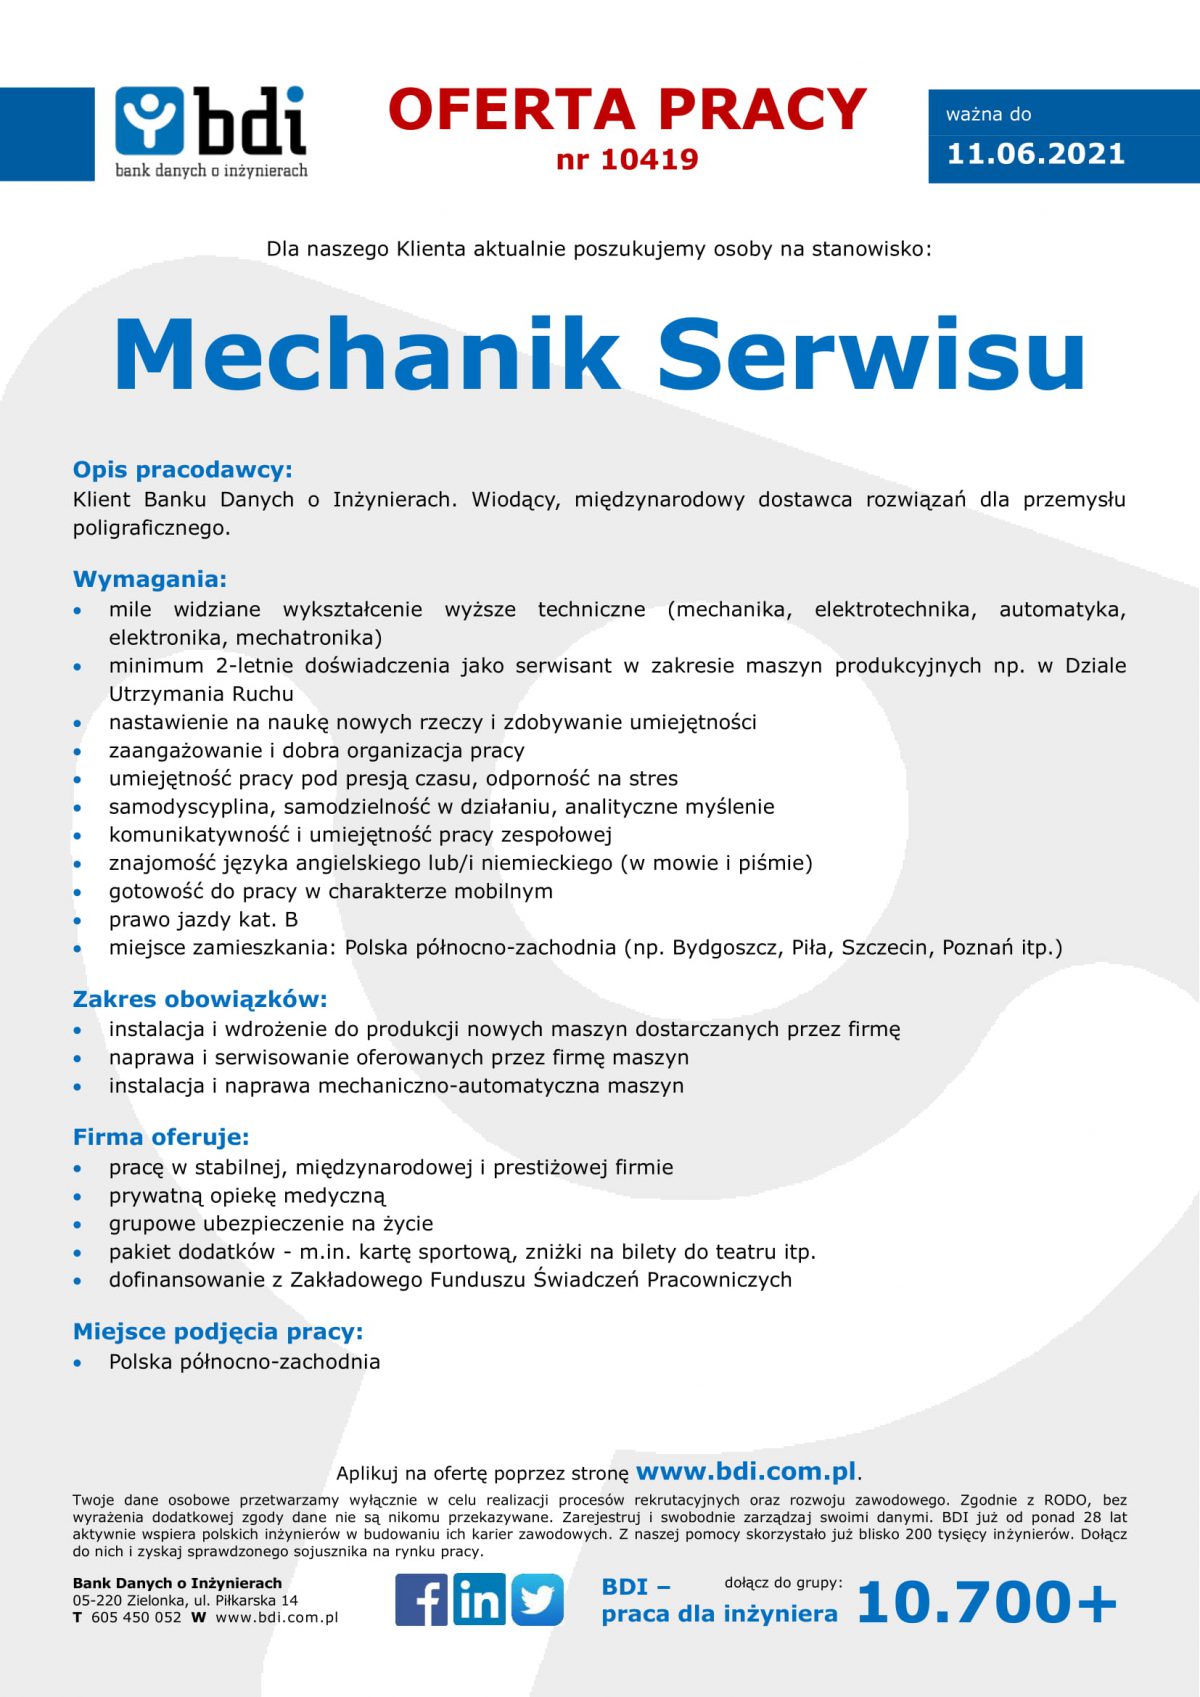 Oferta pracy 10419 Mechanik Serwisu Biuro Karier UJW